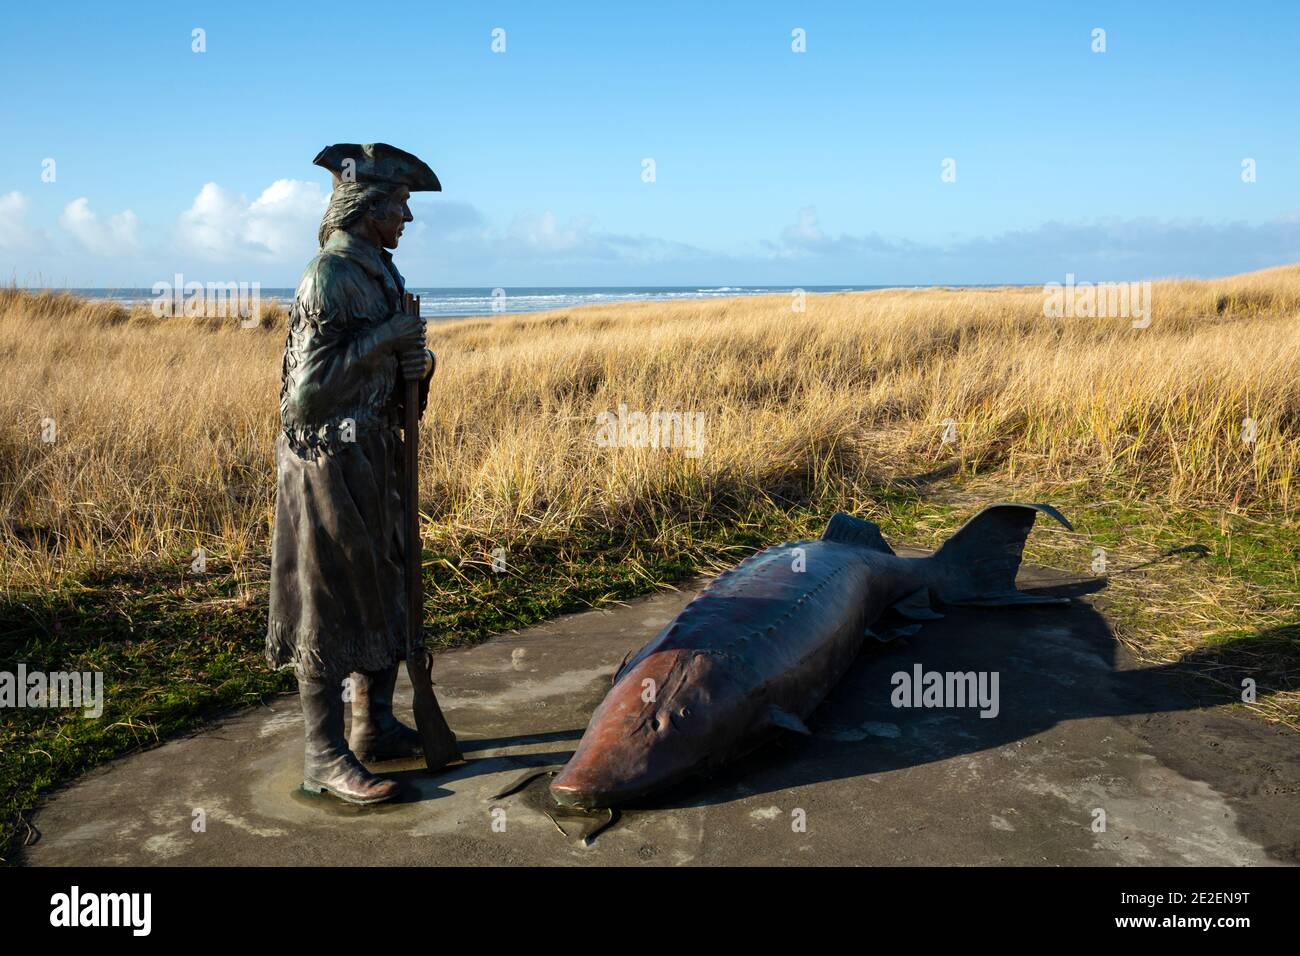 WA19137-00...WASHINGTON - Statue de William Clark observant un esturgeon de 10 mètres sur la plage tout en explorant la péninsule de long Beach. Banque D'Images